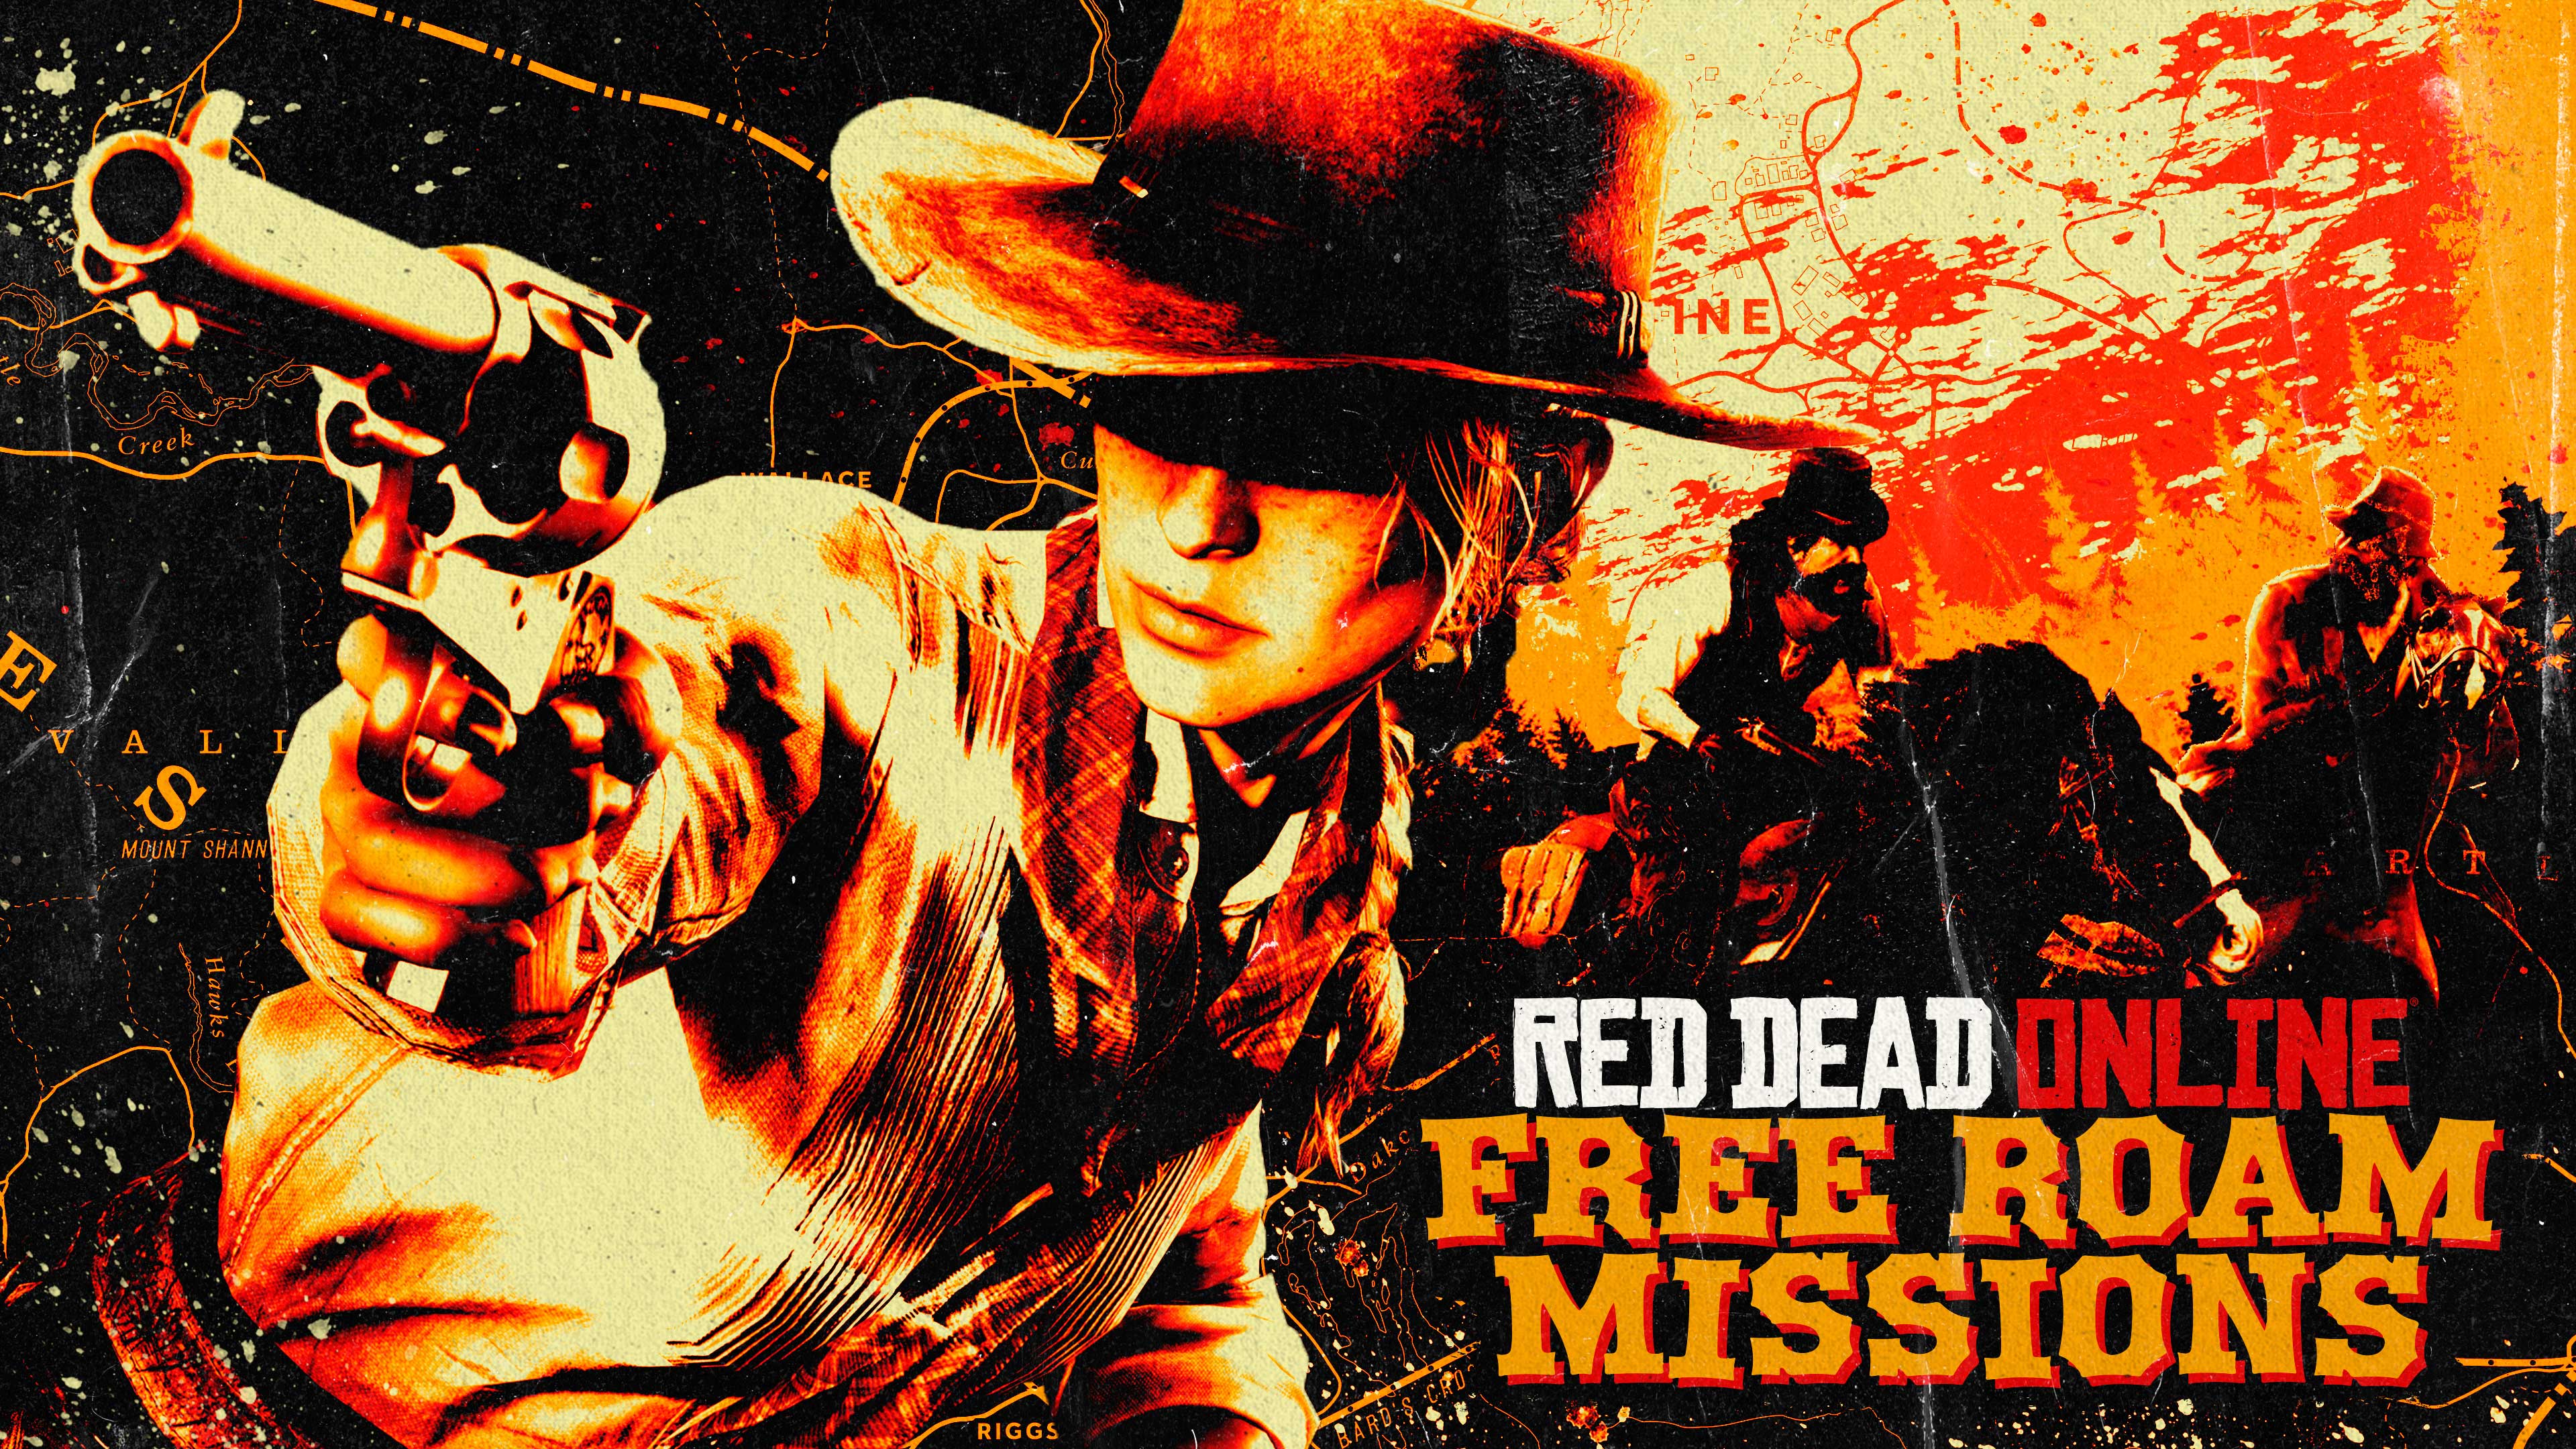 Arte de missões do Modo Livre de Red Dead Online